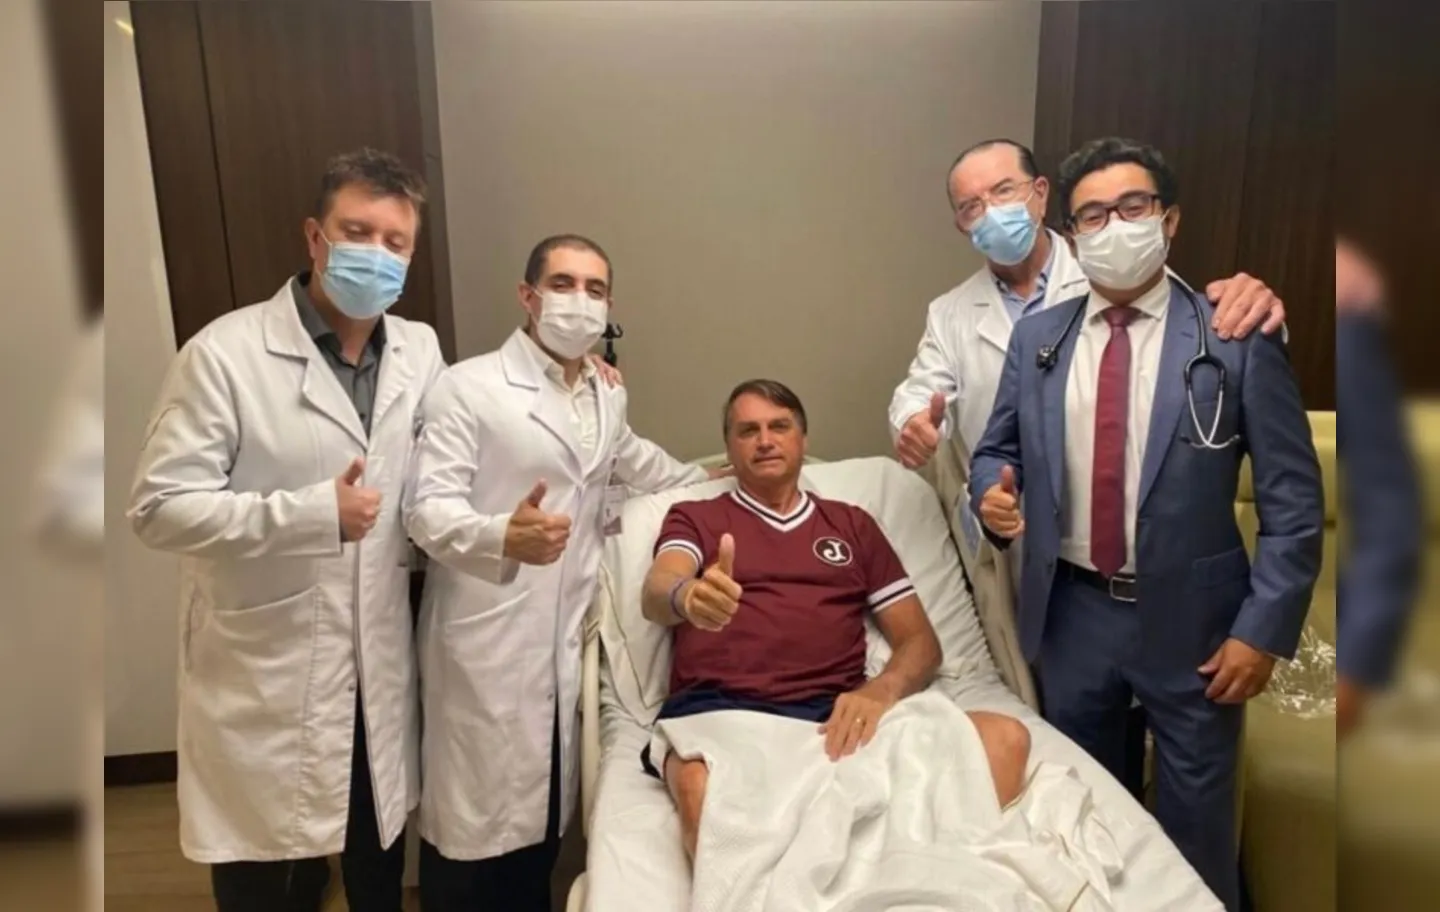 Equipe médica responsável pelo tratamento do presidente descartou necessidade de nova cirurgia